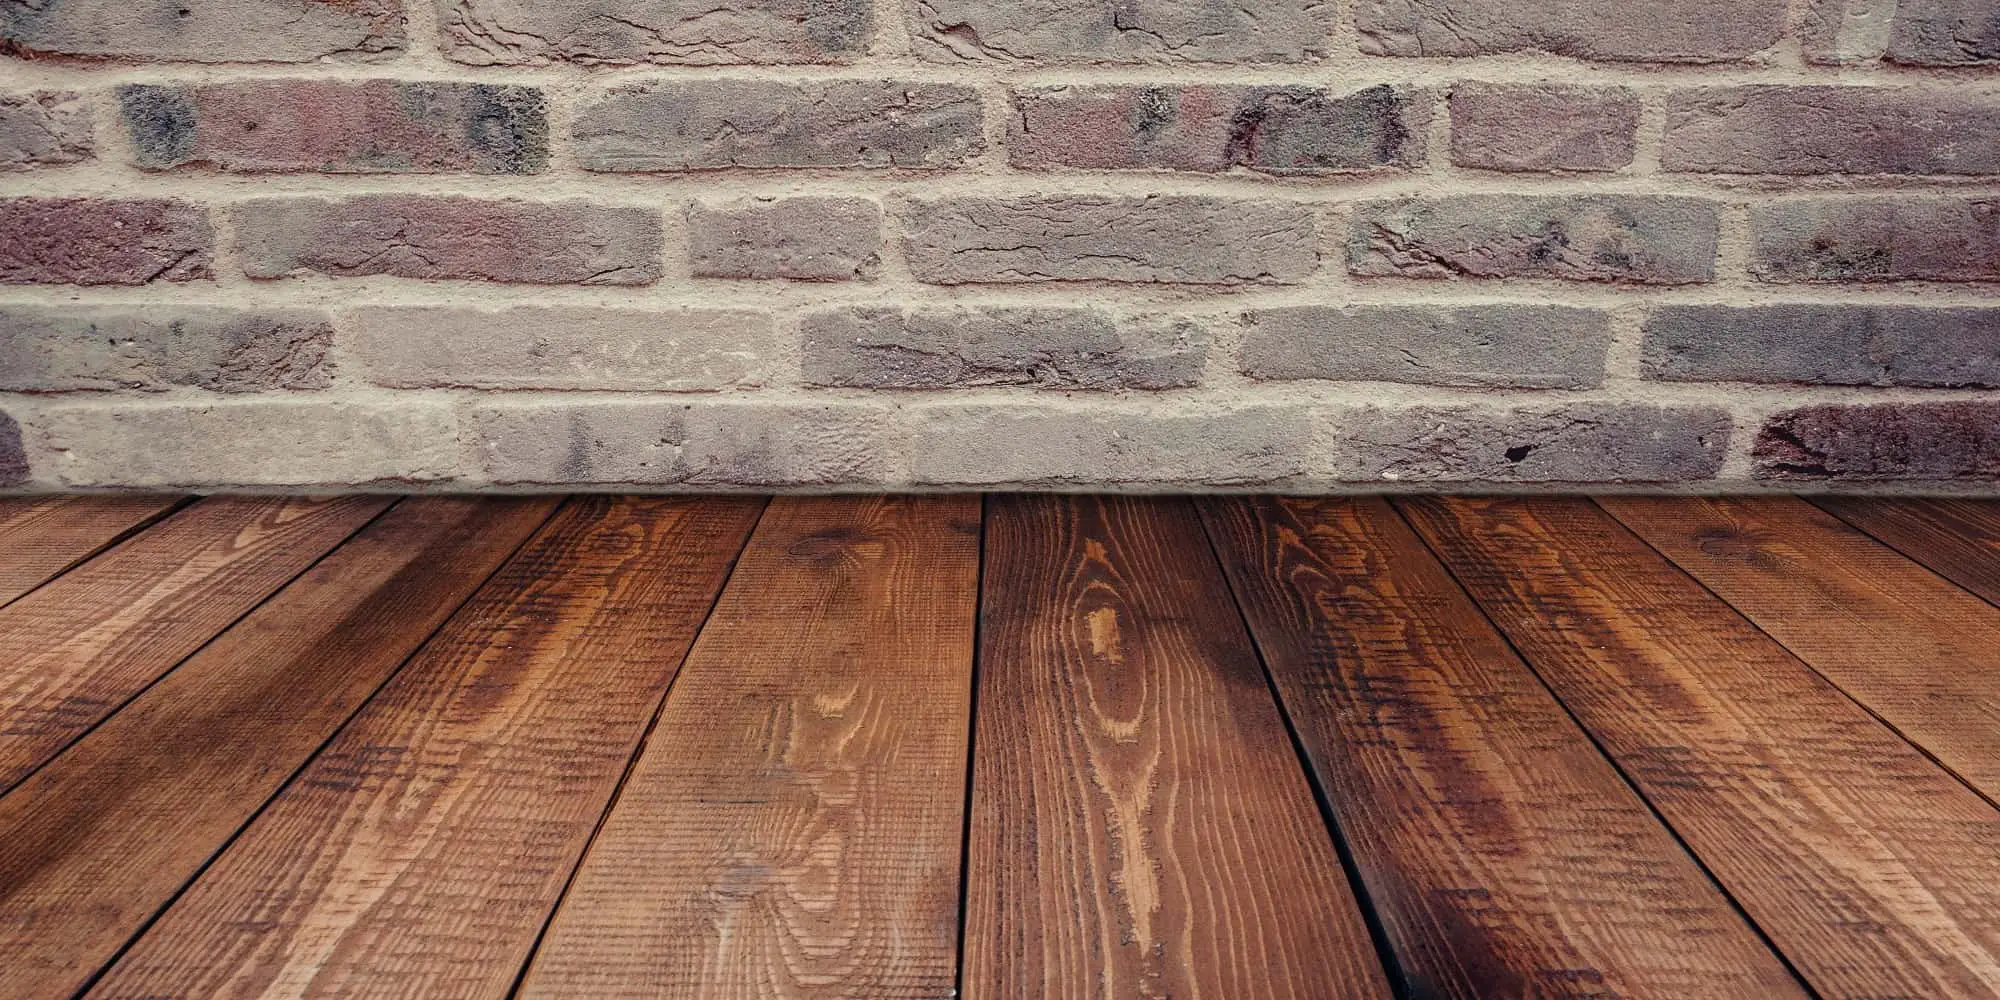 wood floor and bricks wall